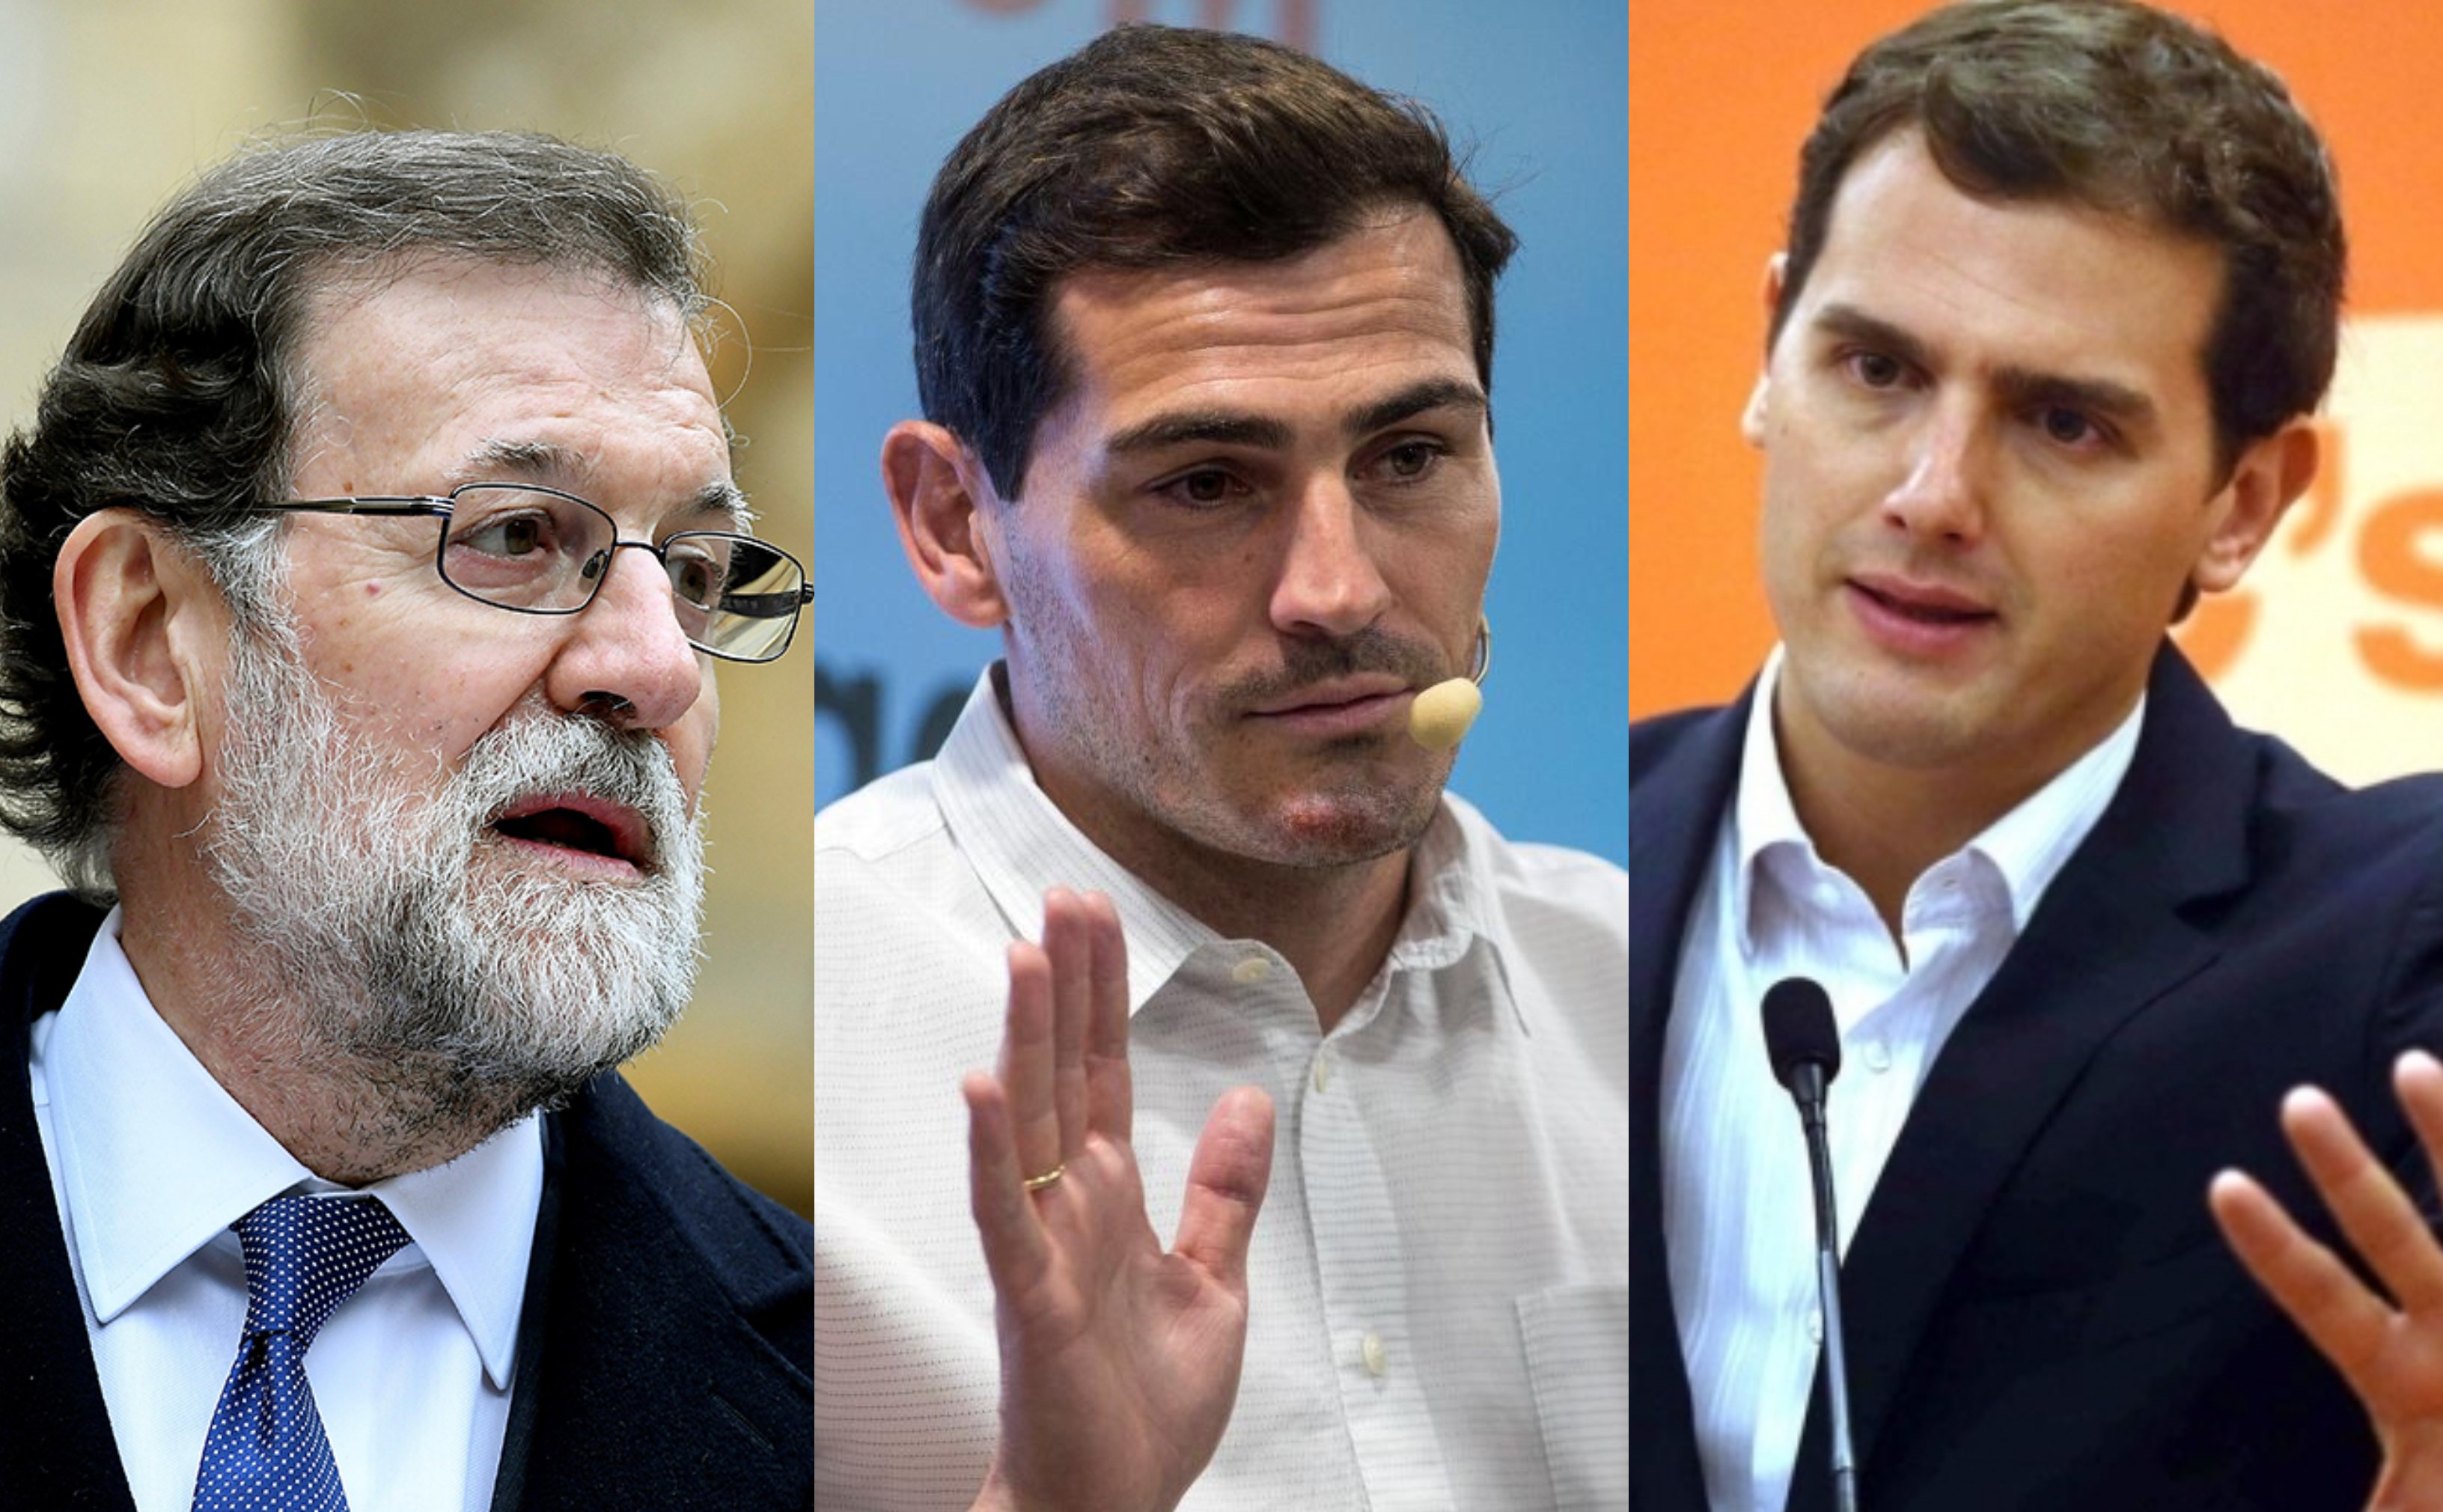 ¿Quien queréis que sea el nuevo presidente de la Federación Española de fútbol? Rajoy_casillas_rivera